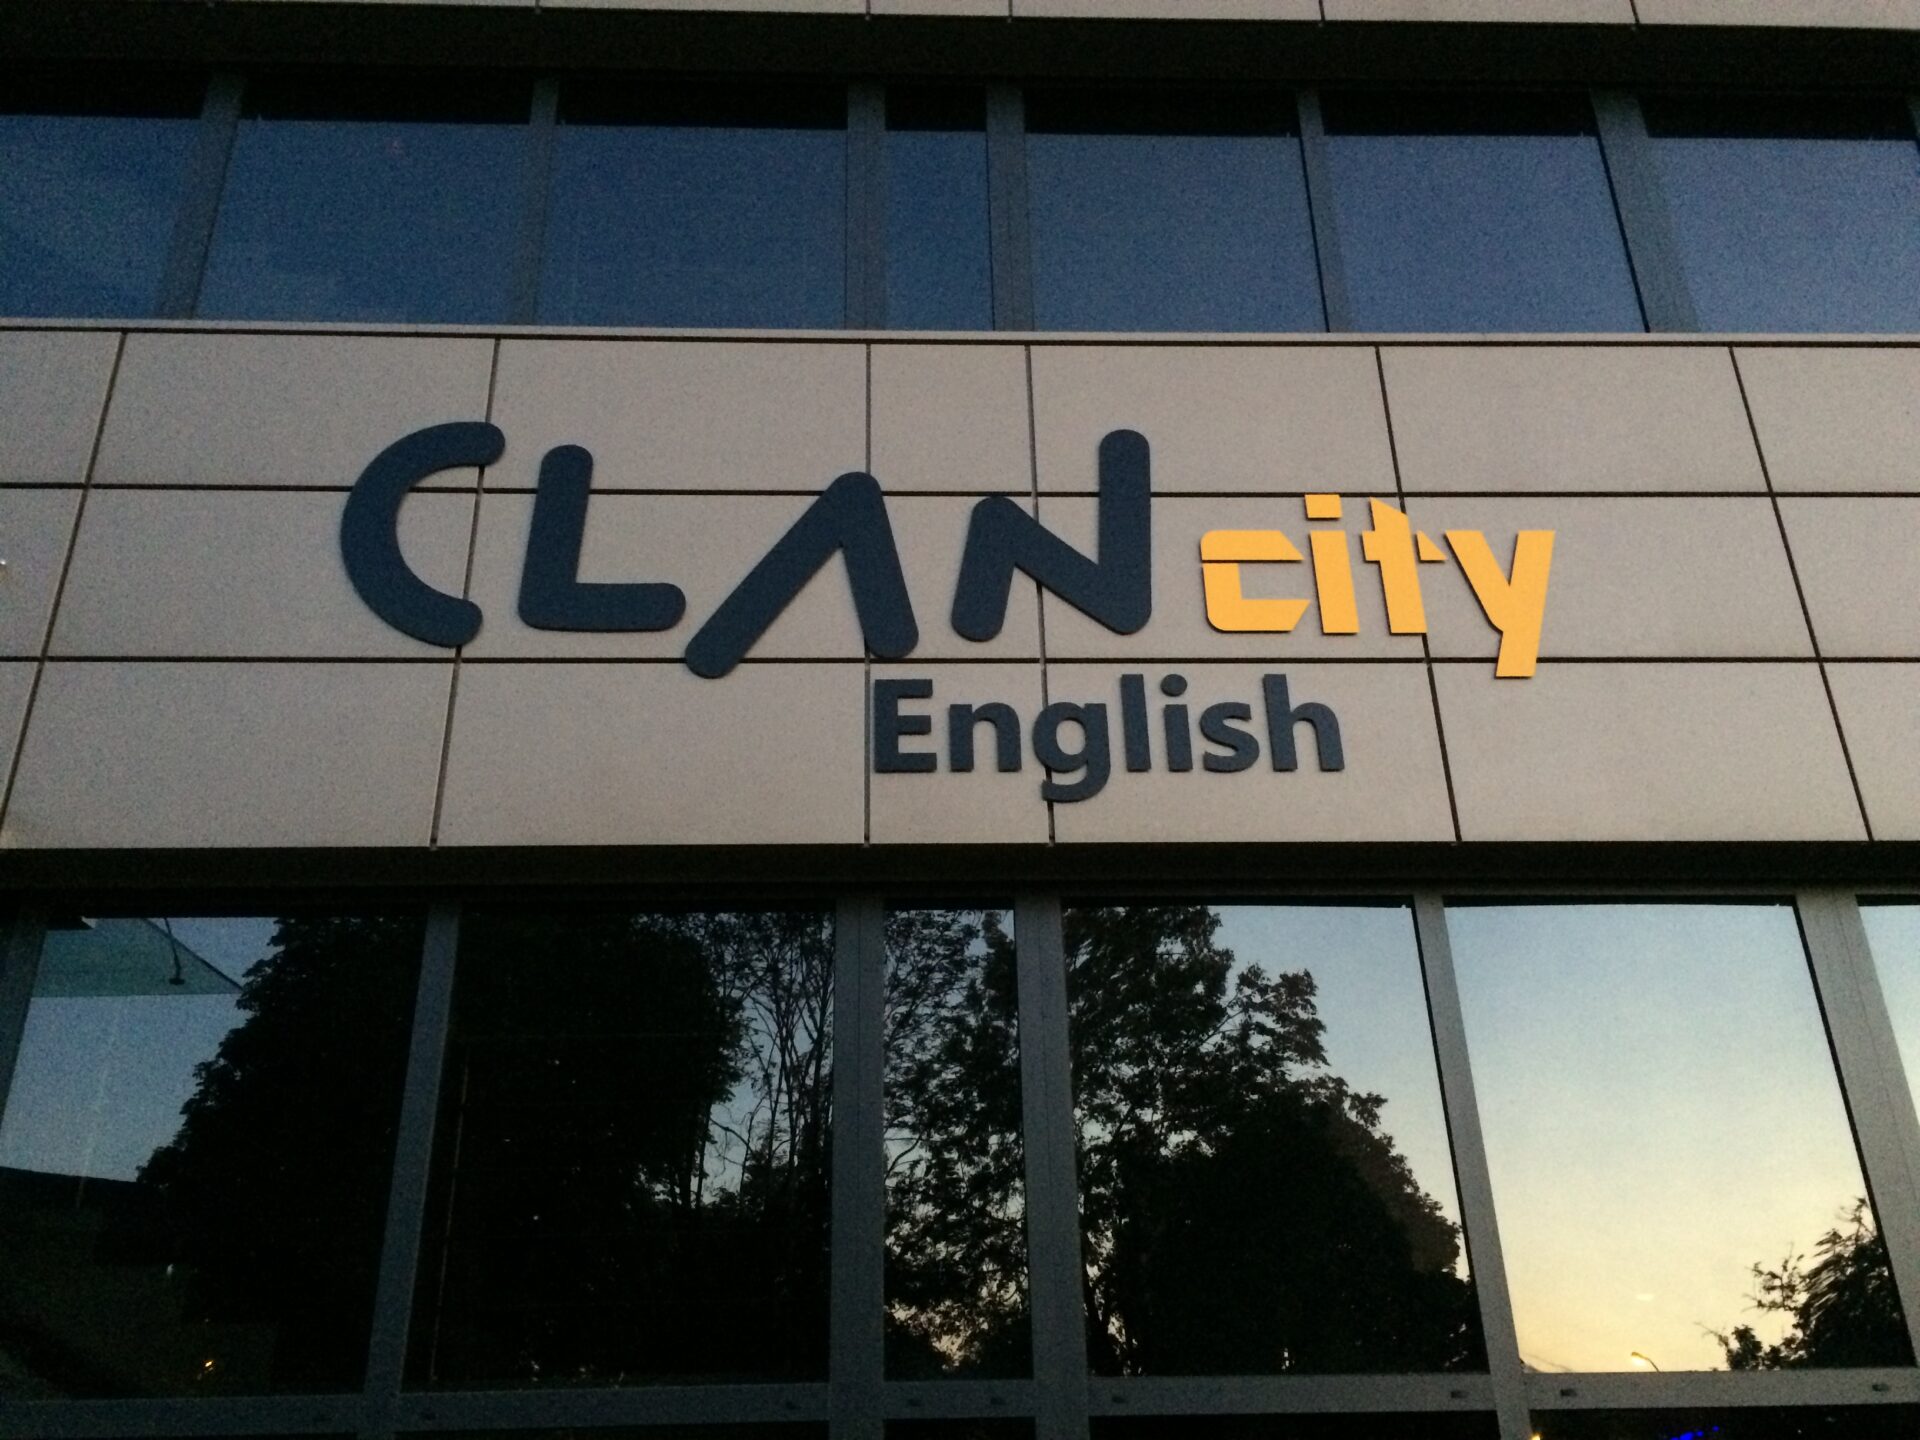 ClanCity English - wejście do nowej siedziby w Zabrzu. Duże litery wykonane z Dibond - czarny oraz żółty - na panelowej elewacji budynku.